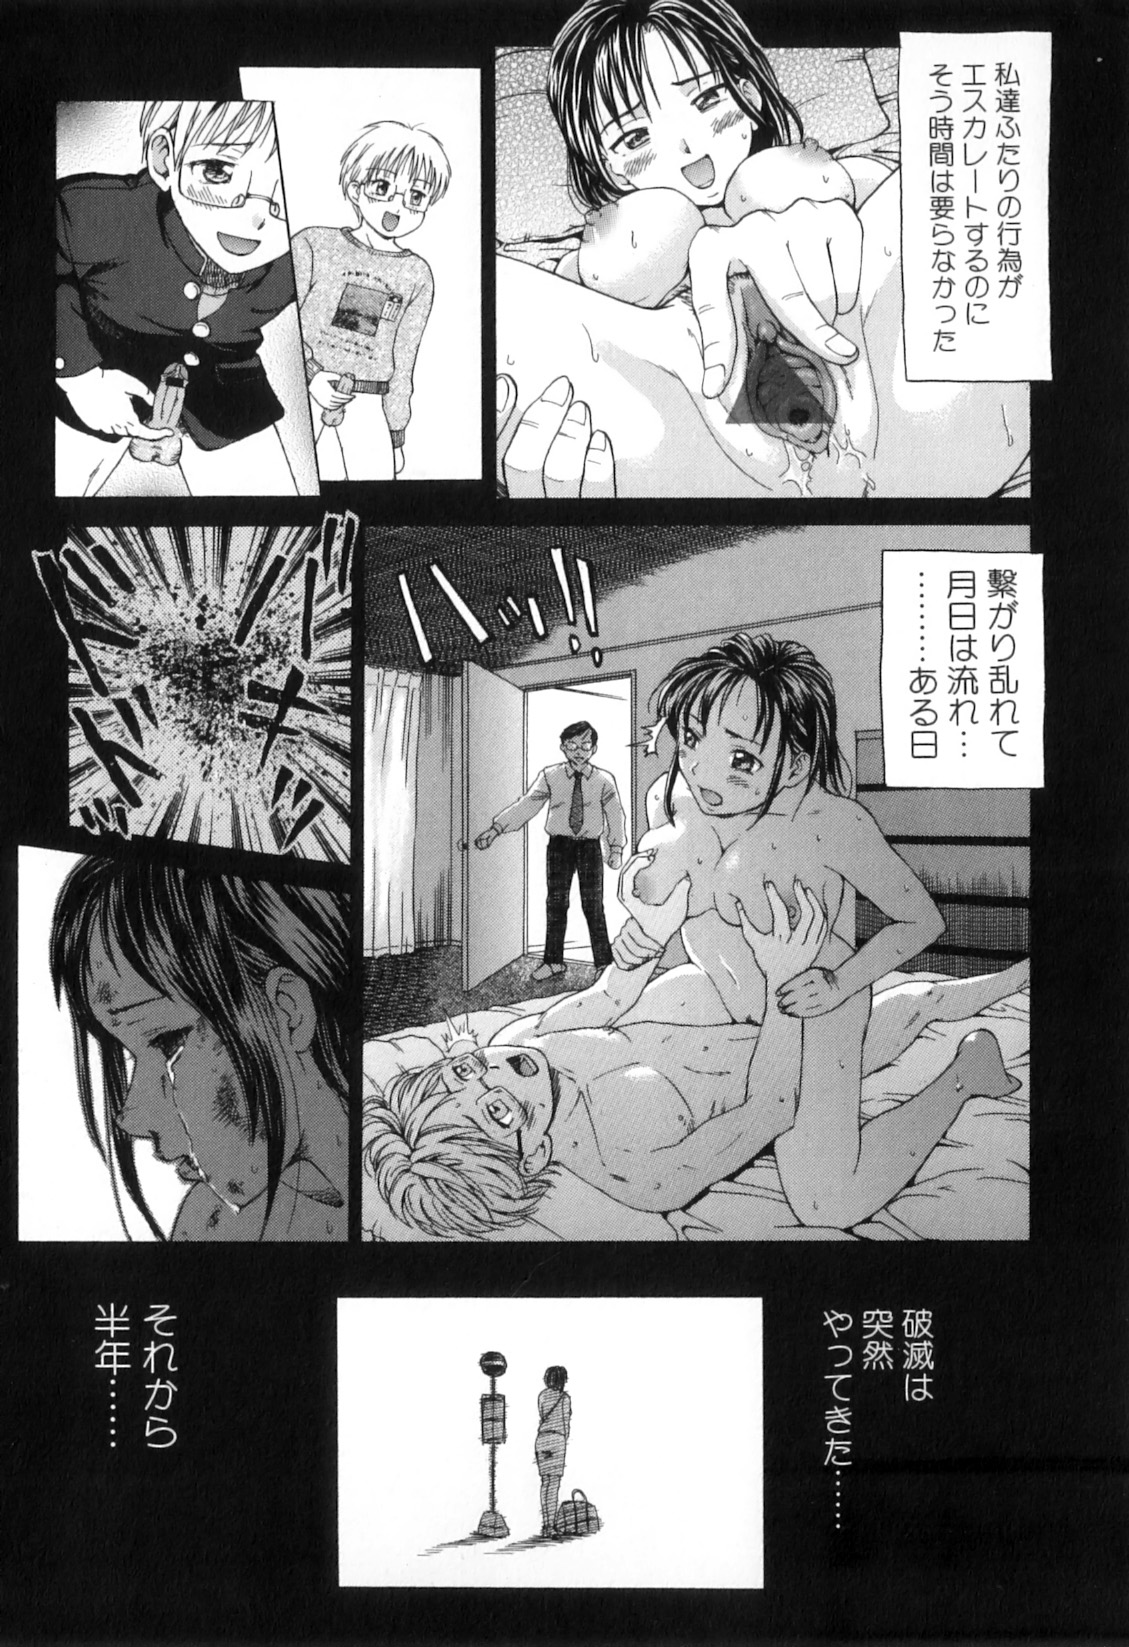 [Anthology] Boshi Chijou Kitan 2 page 27 full